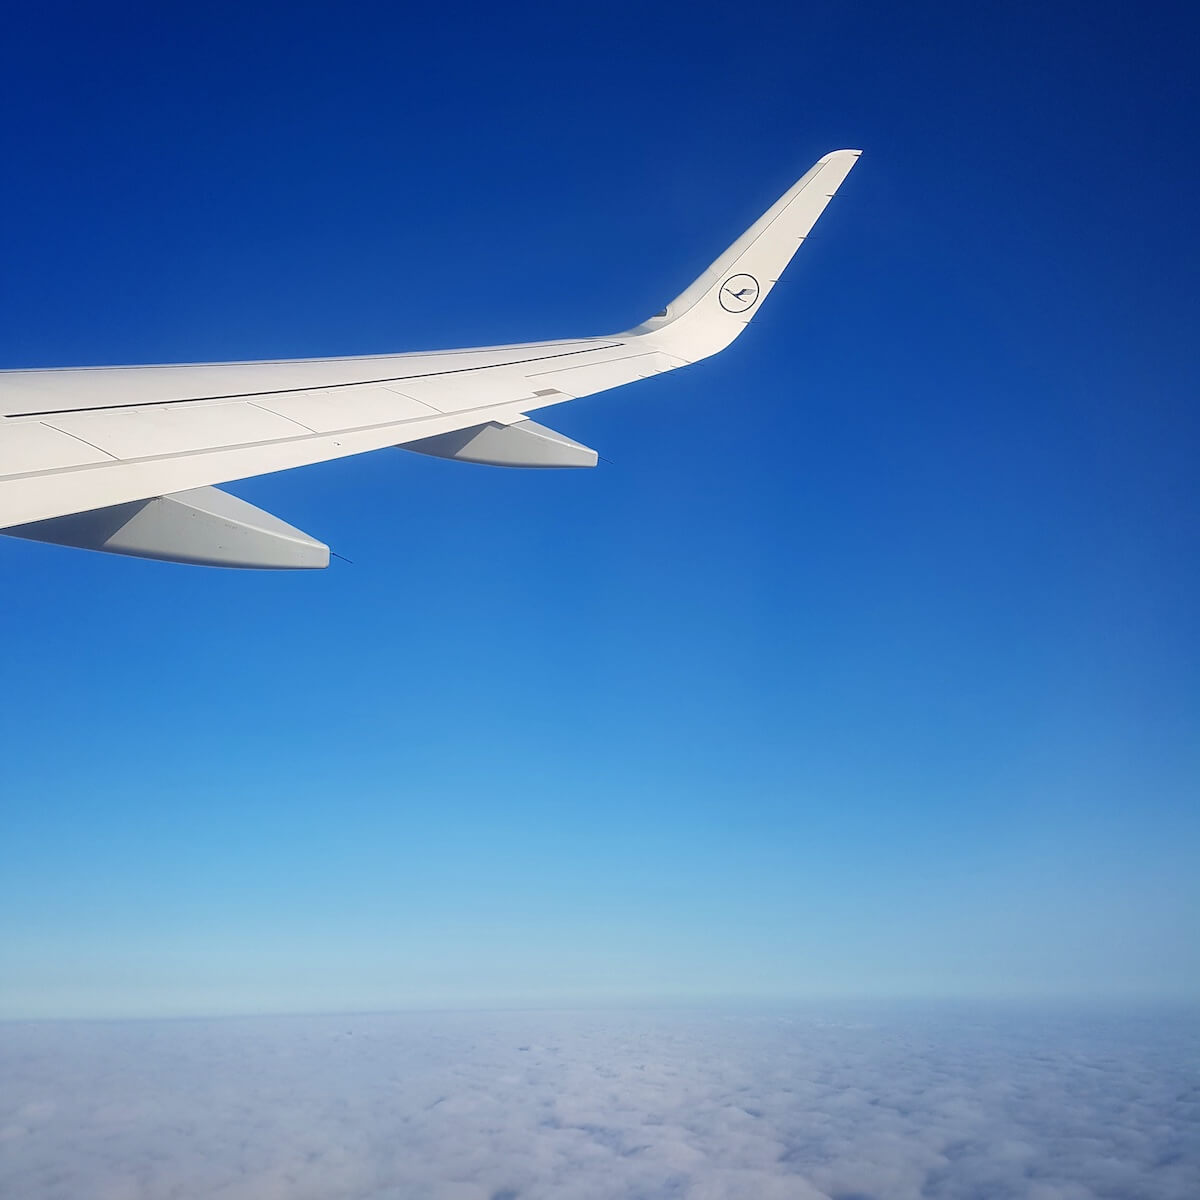 Vedere dintr-un avion Lufthansa pe un cer albastru. Urmărirea zborului ajută familia de la sol să își urmărească propria călătorie. 